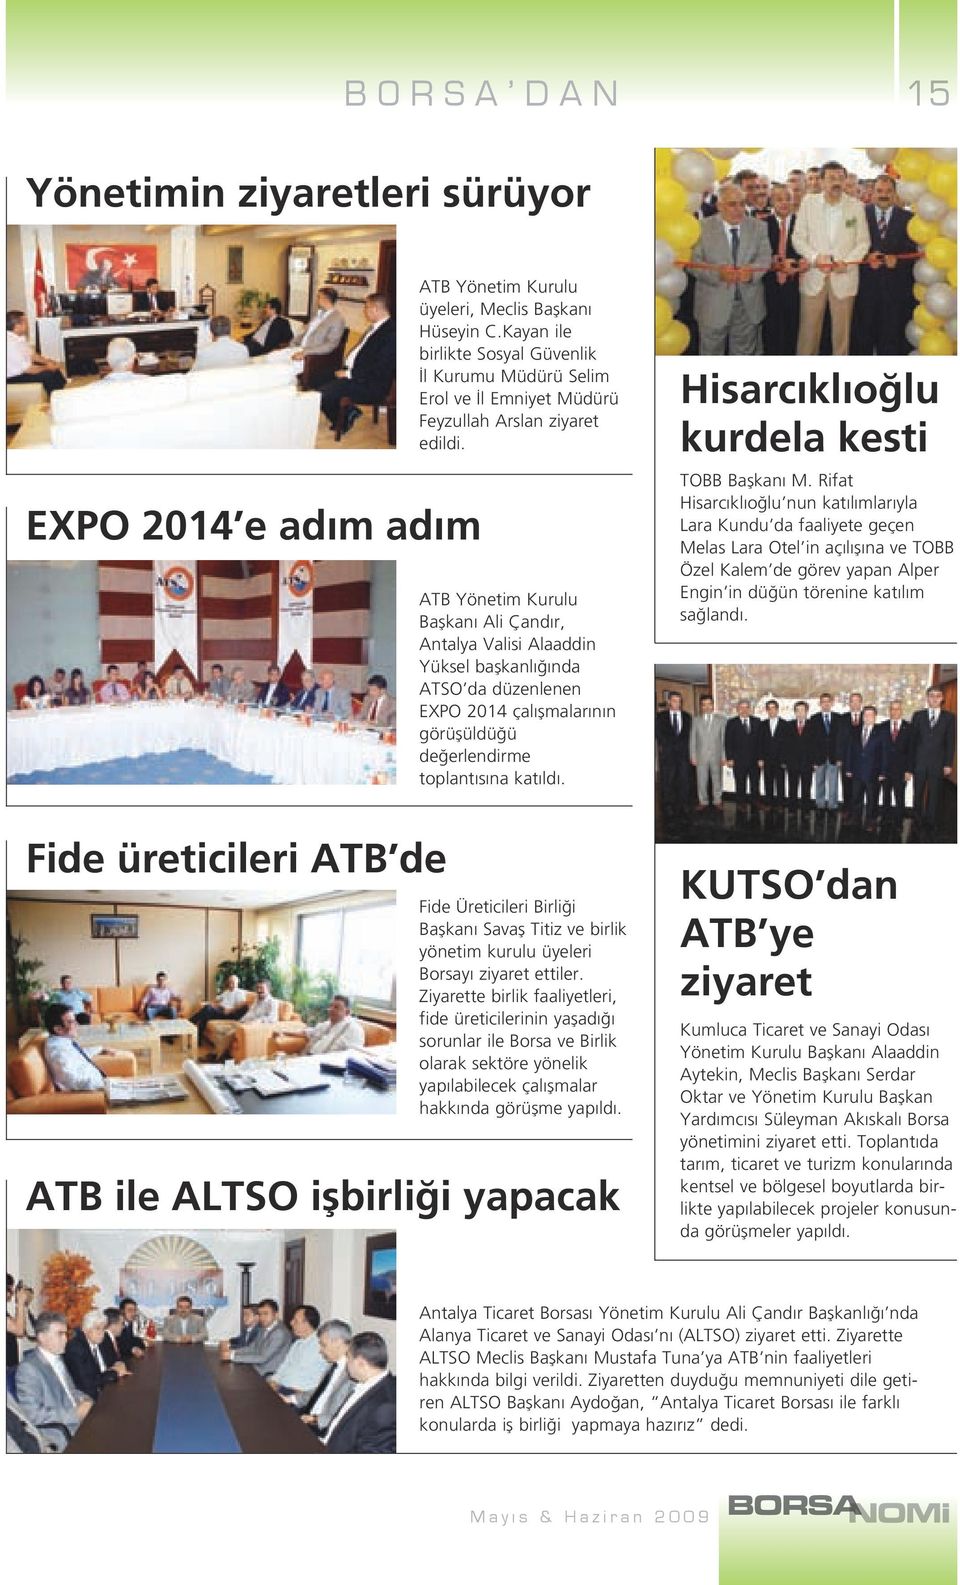 ATB Yönetim Kurulu Başkanı Ali Çandır, Antalya Valisi Alaaddin Yüksel başkanlığında ATSO da düzenlenen EXPO 2014 çalışmalarının görüşüldüğü değerlendirme toplantısına katıldı.